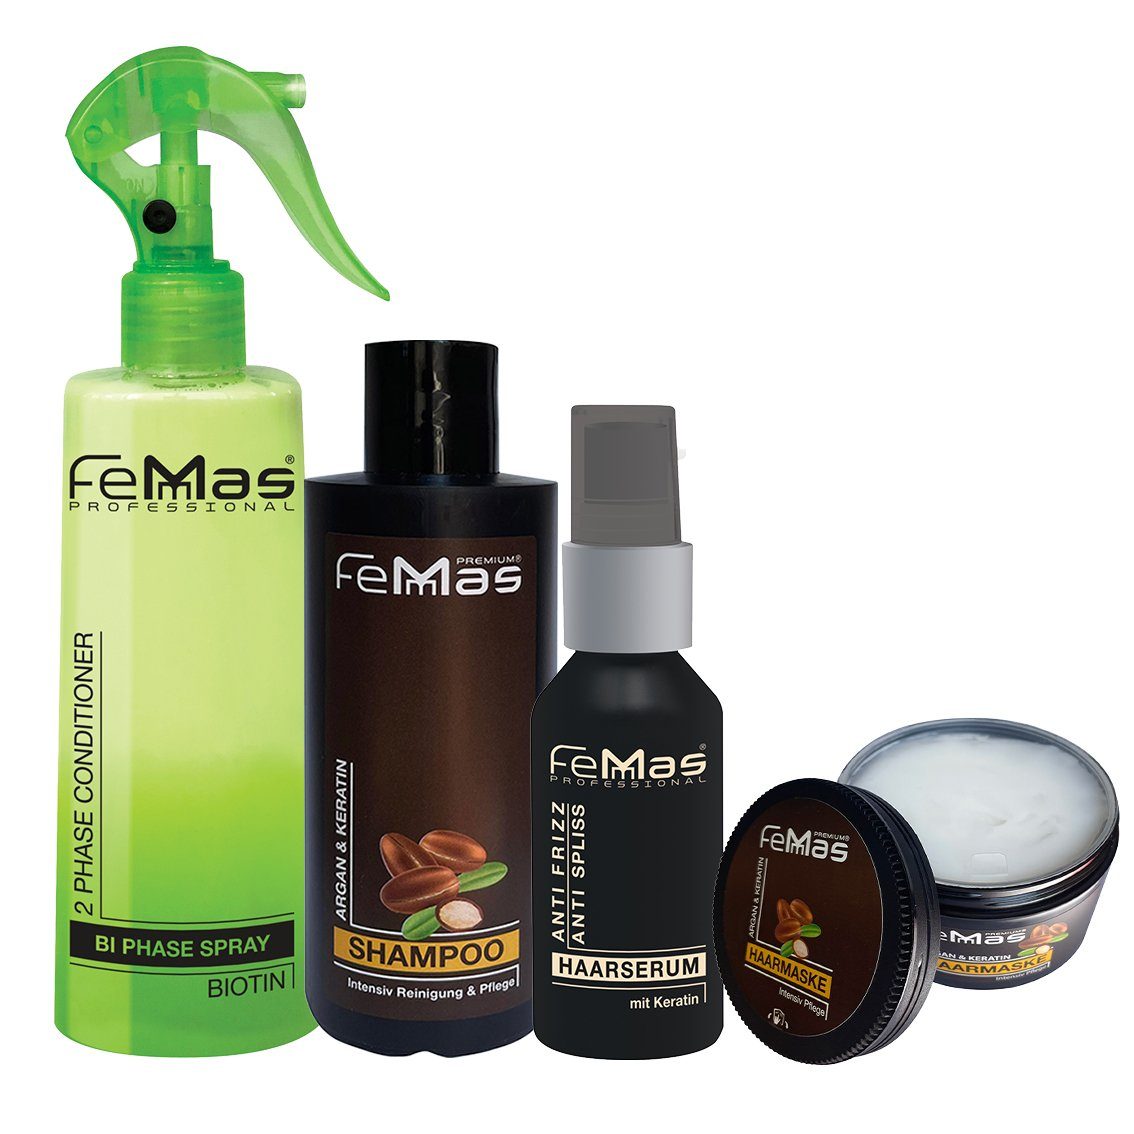 Femmas Premium Haarpflege-Set FemMas Deluxe Haarpflegeset Argan & Biotin